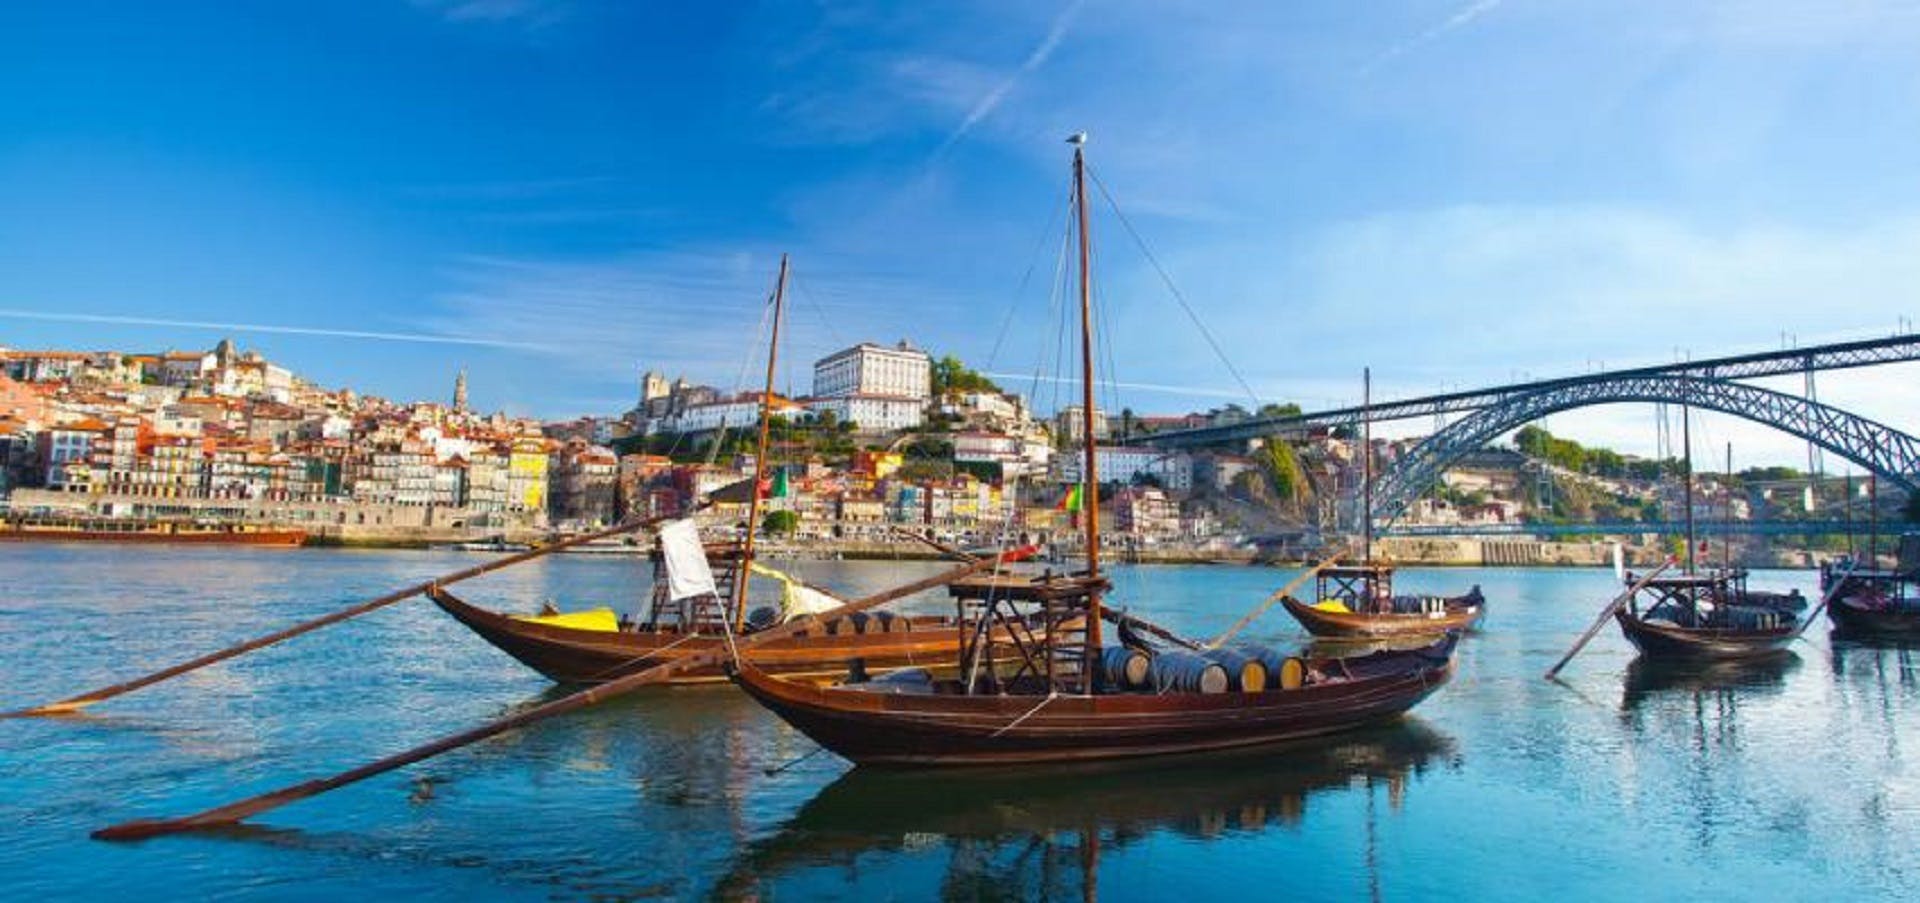 Excursão de dia inteiro pela cidade do Porto